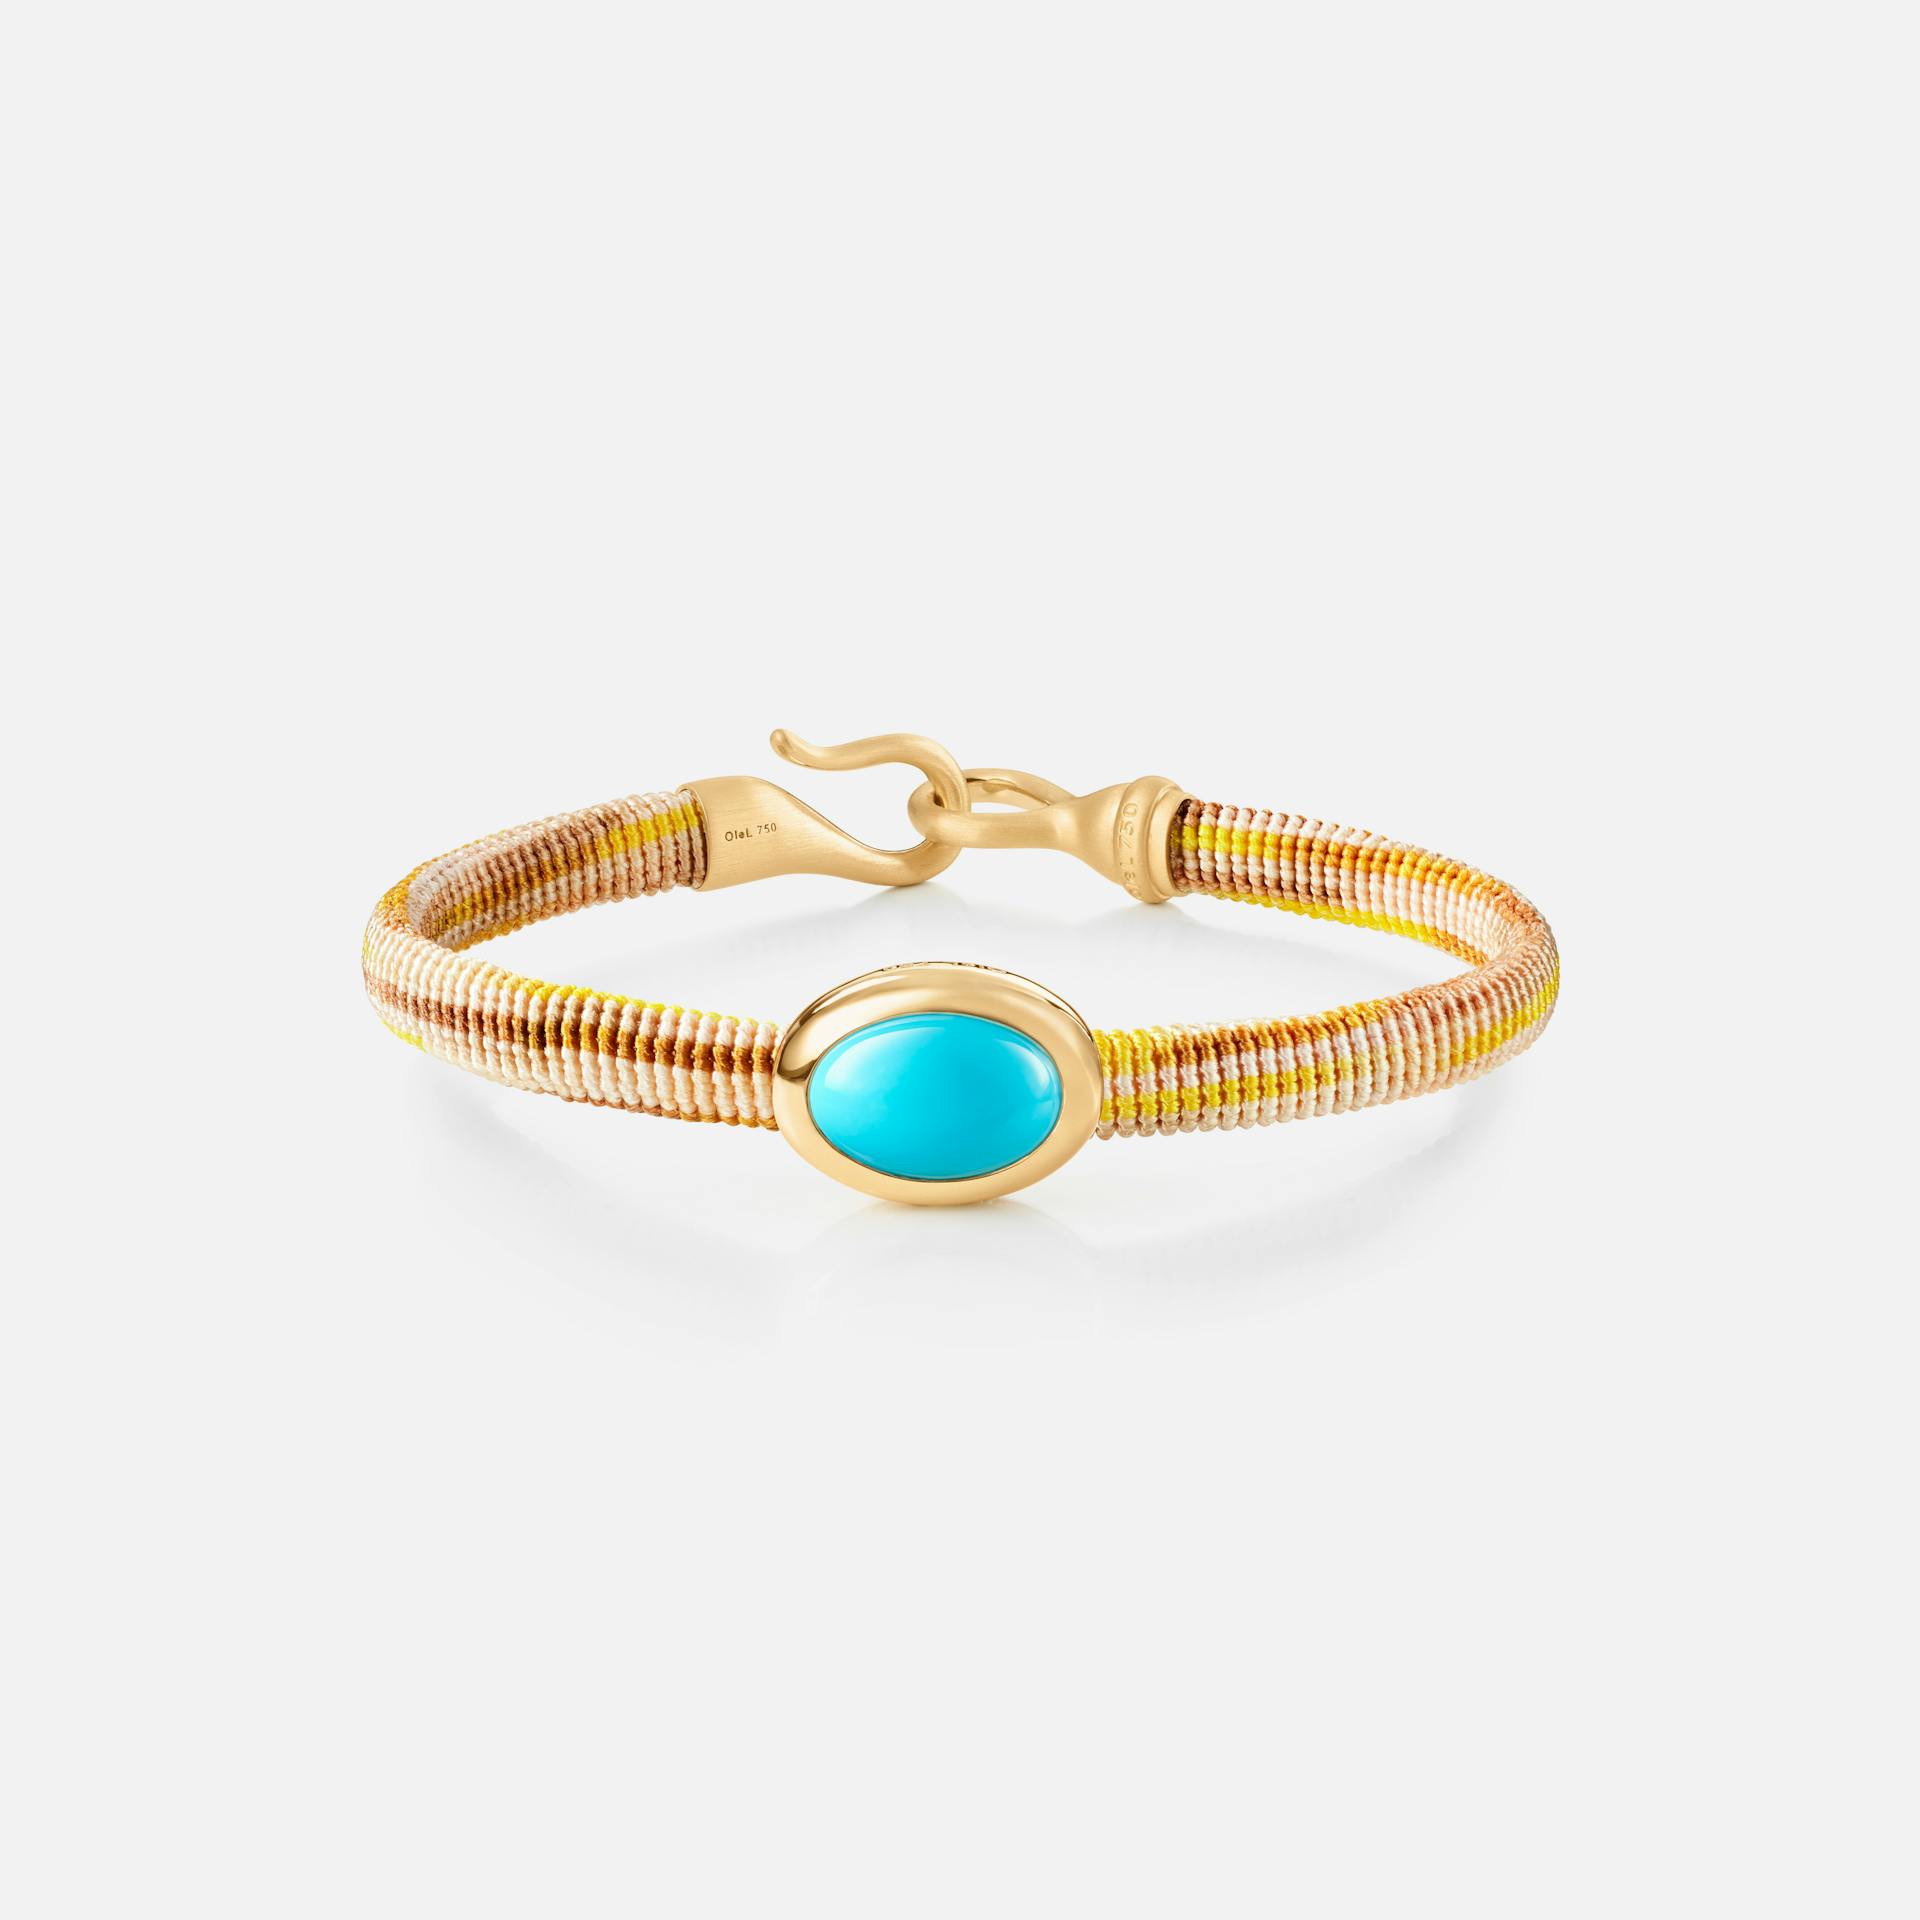 Life Bracelet with turquoise 6 mm 18k guld og turkis med Golden snor